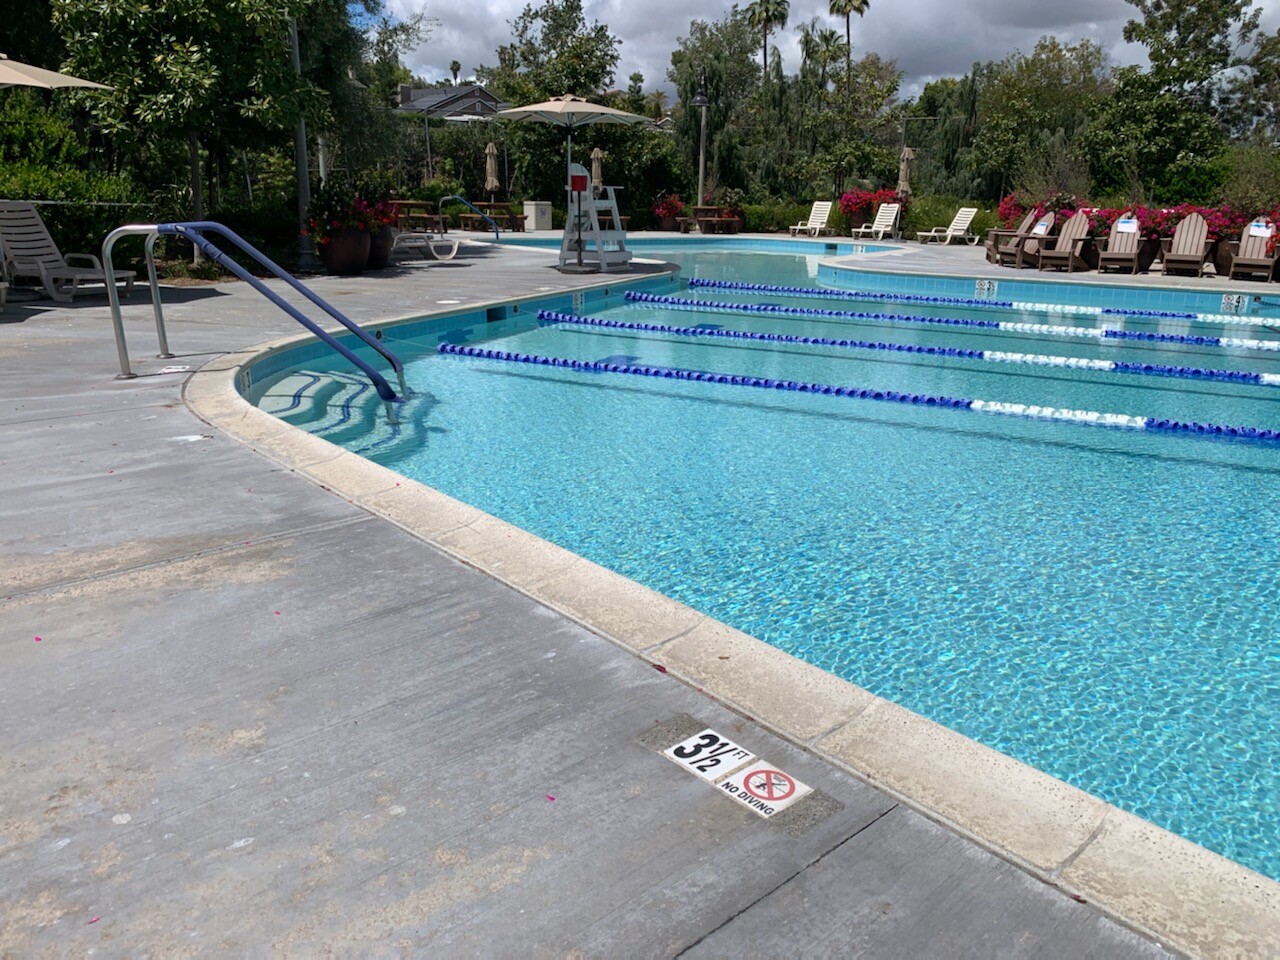 Concrete pool deck - non-skid